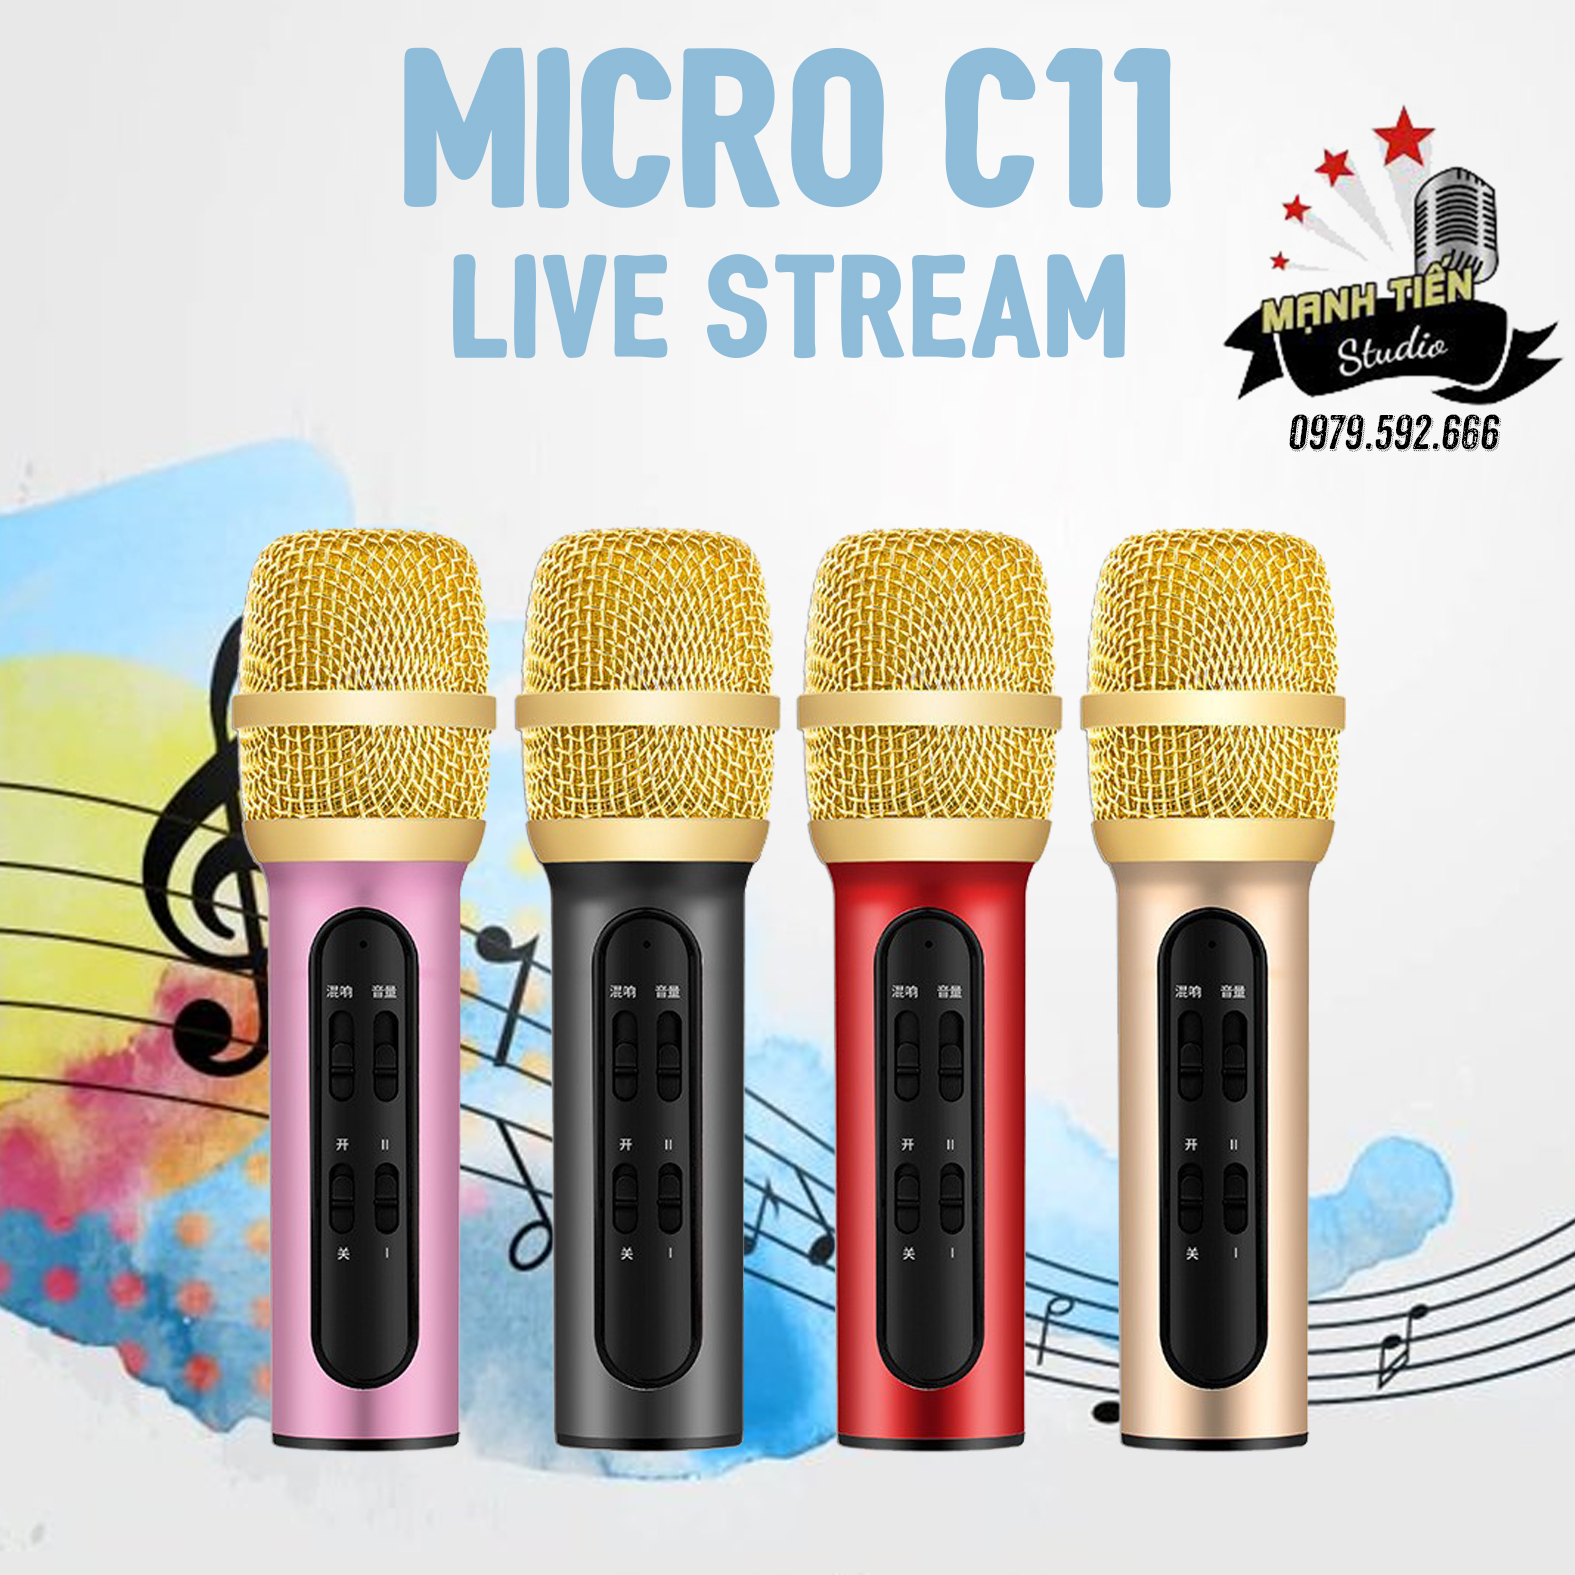 Micro thu âm C11 - Livestream Trên Điện Thoại - Cực Hay, Cực Đẹp, Phù Hợp Với Mọi Loại Điện Thoại - Mic hát karaoke không cần soundcard - Thu âm tại nhà, micro karaoke online cao cấp - Bảo hành 12 tháng